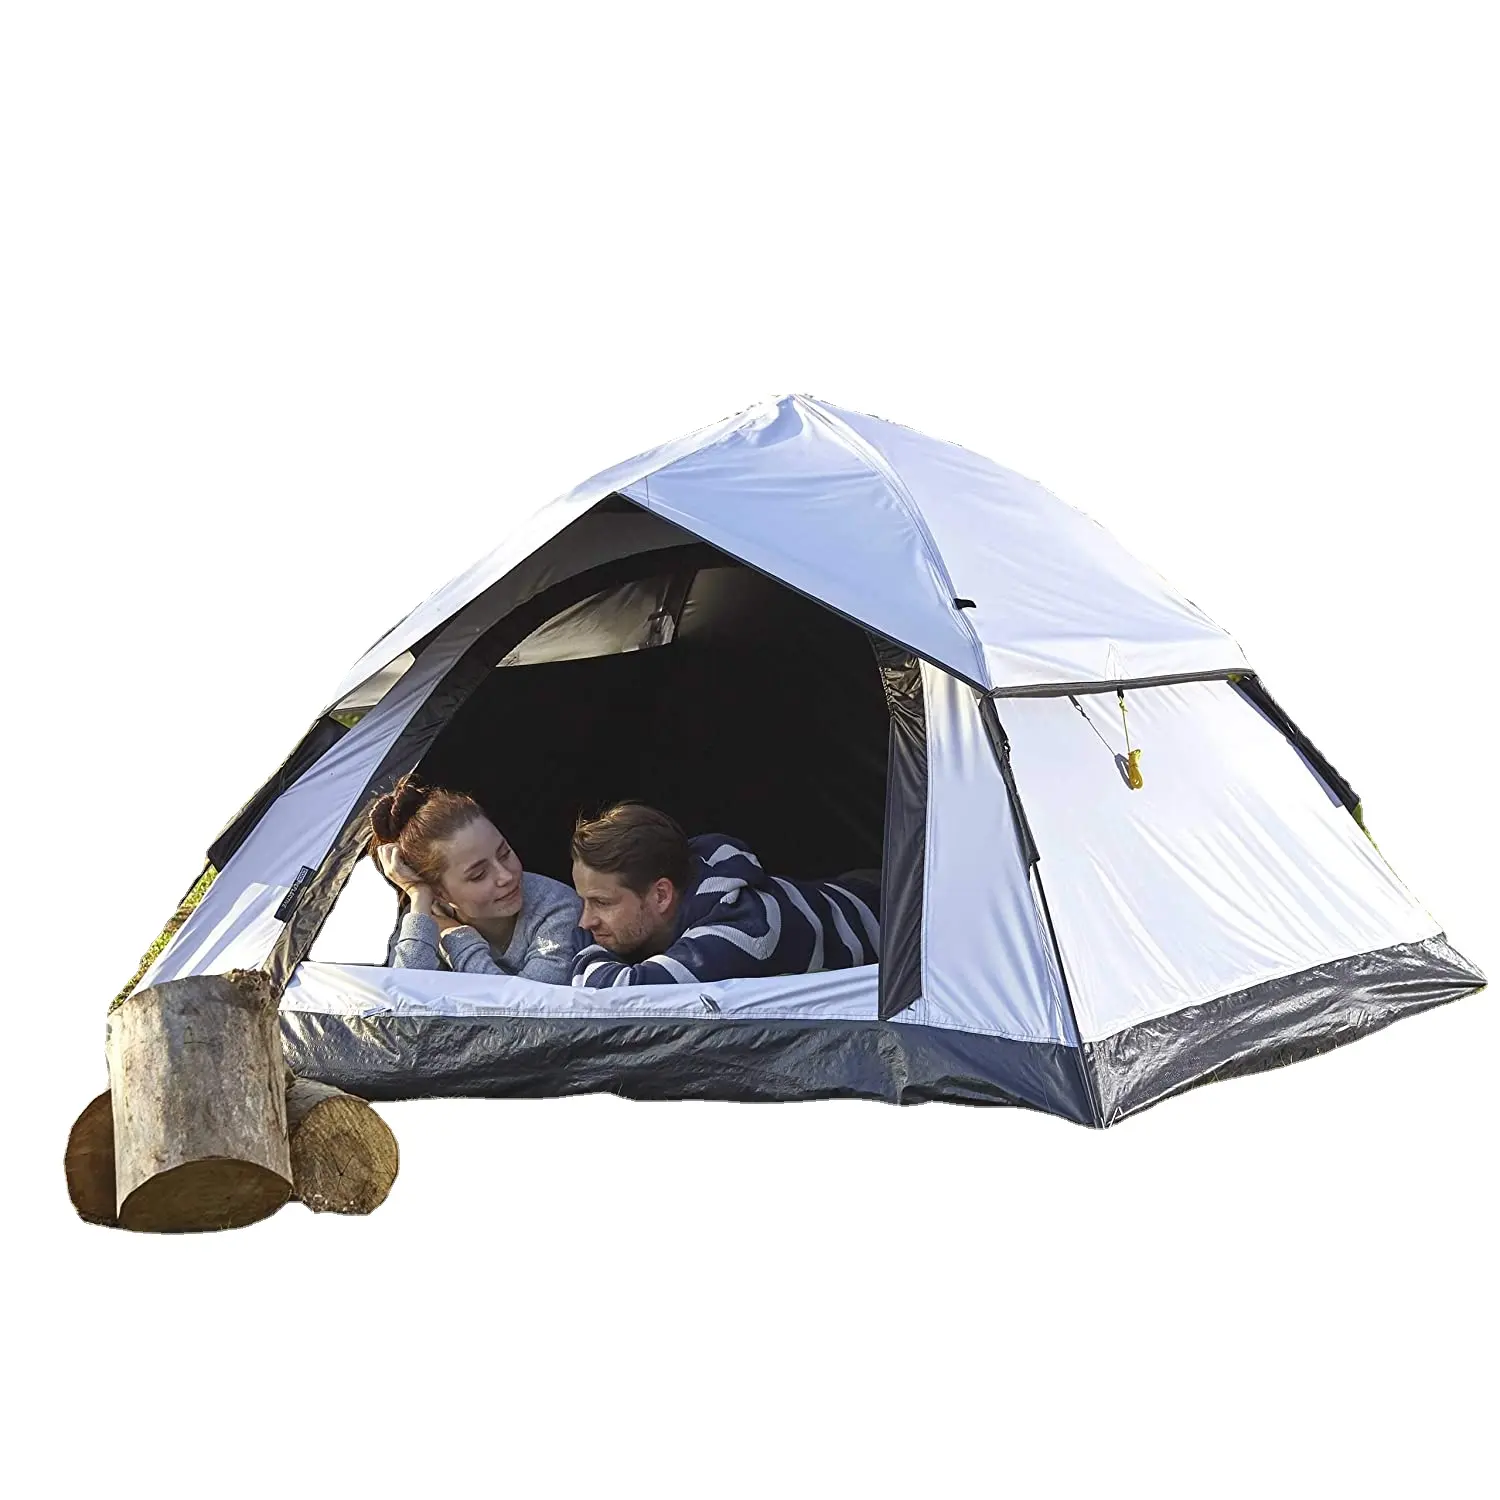 חיצוני קל משקל צצים אוהל 3 אדם אוהל קמפינג פסטיבל שני אוהל 210x190x110 cm לשאת תיק.